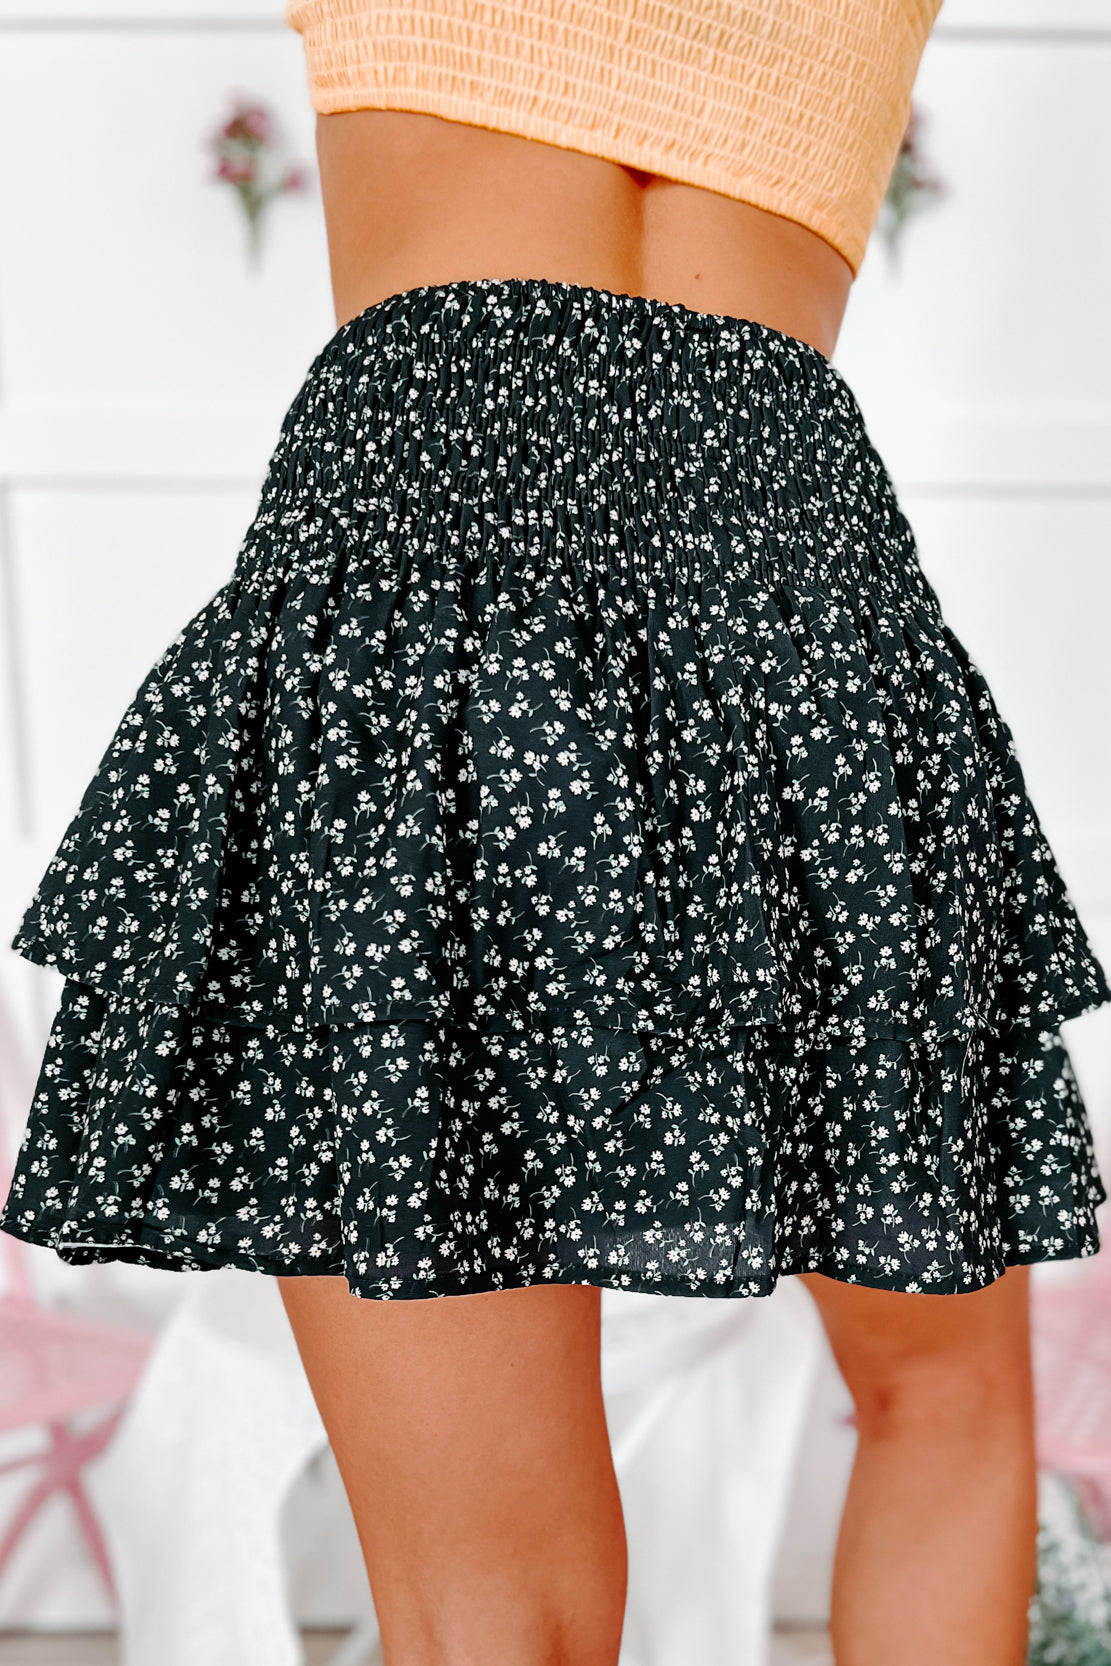 Delightful Darling Smocked Floral Mini Skirt (Black) - NanaMacs